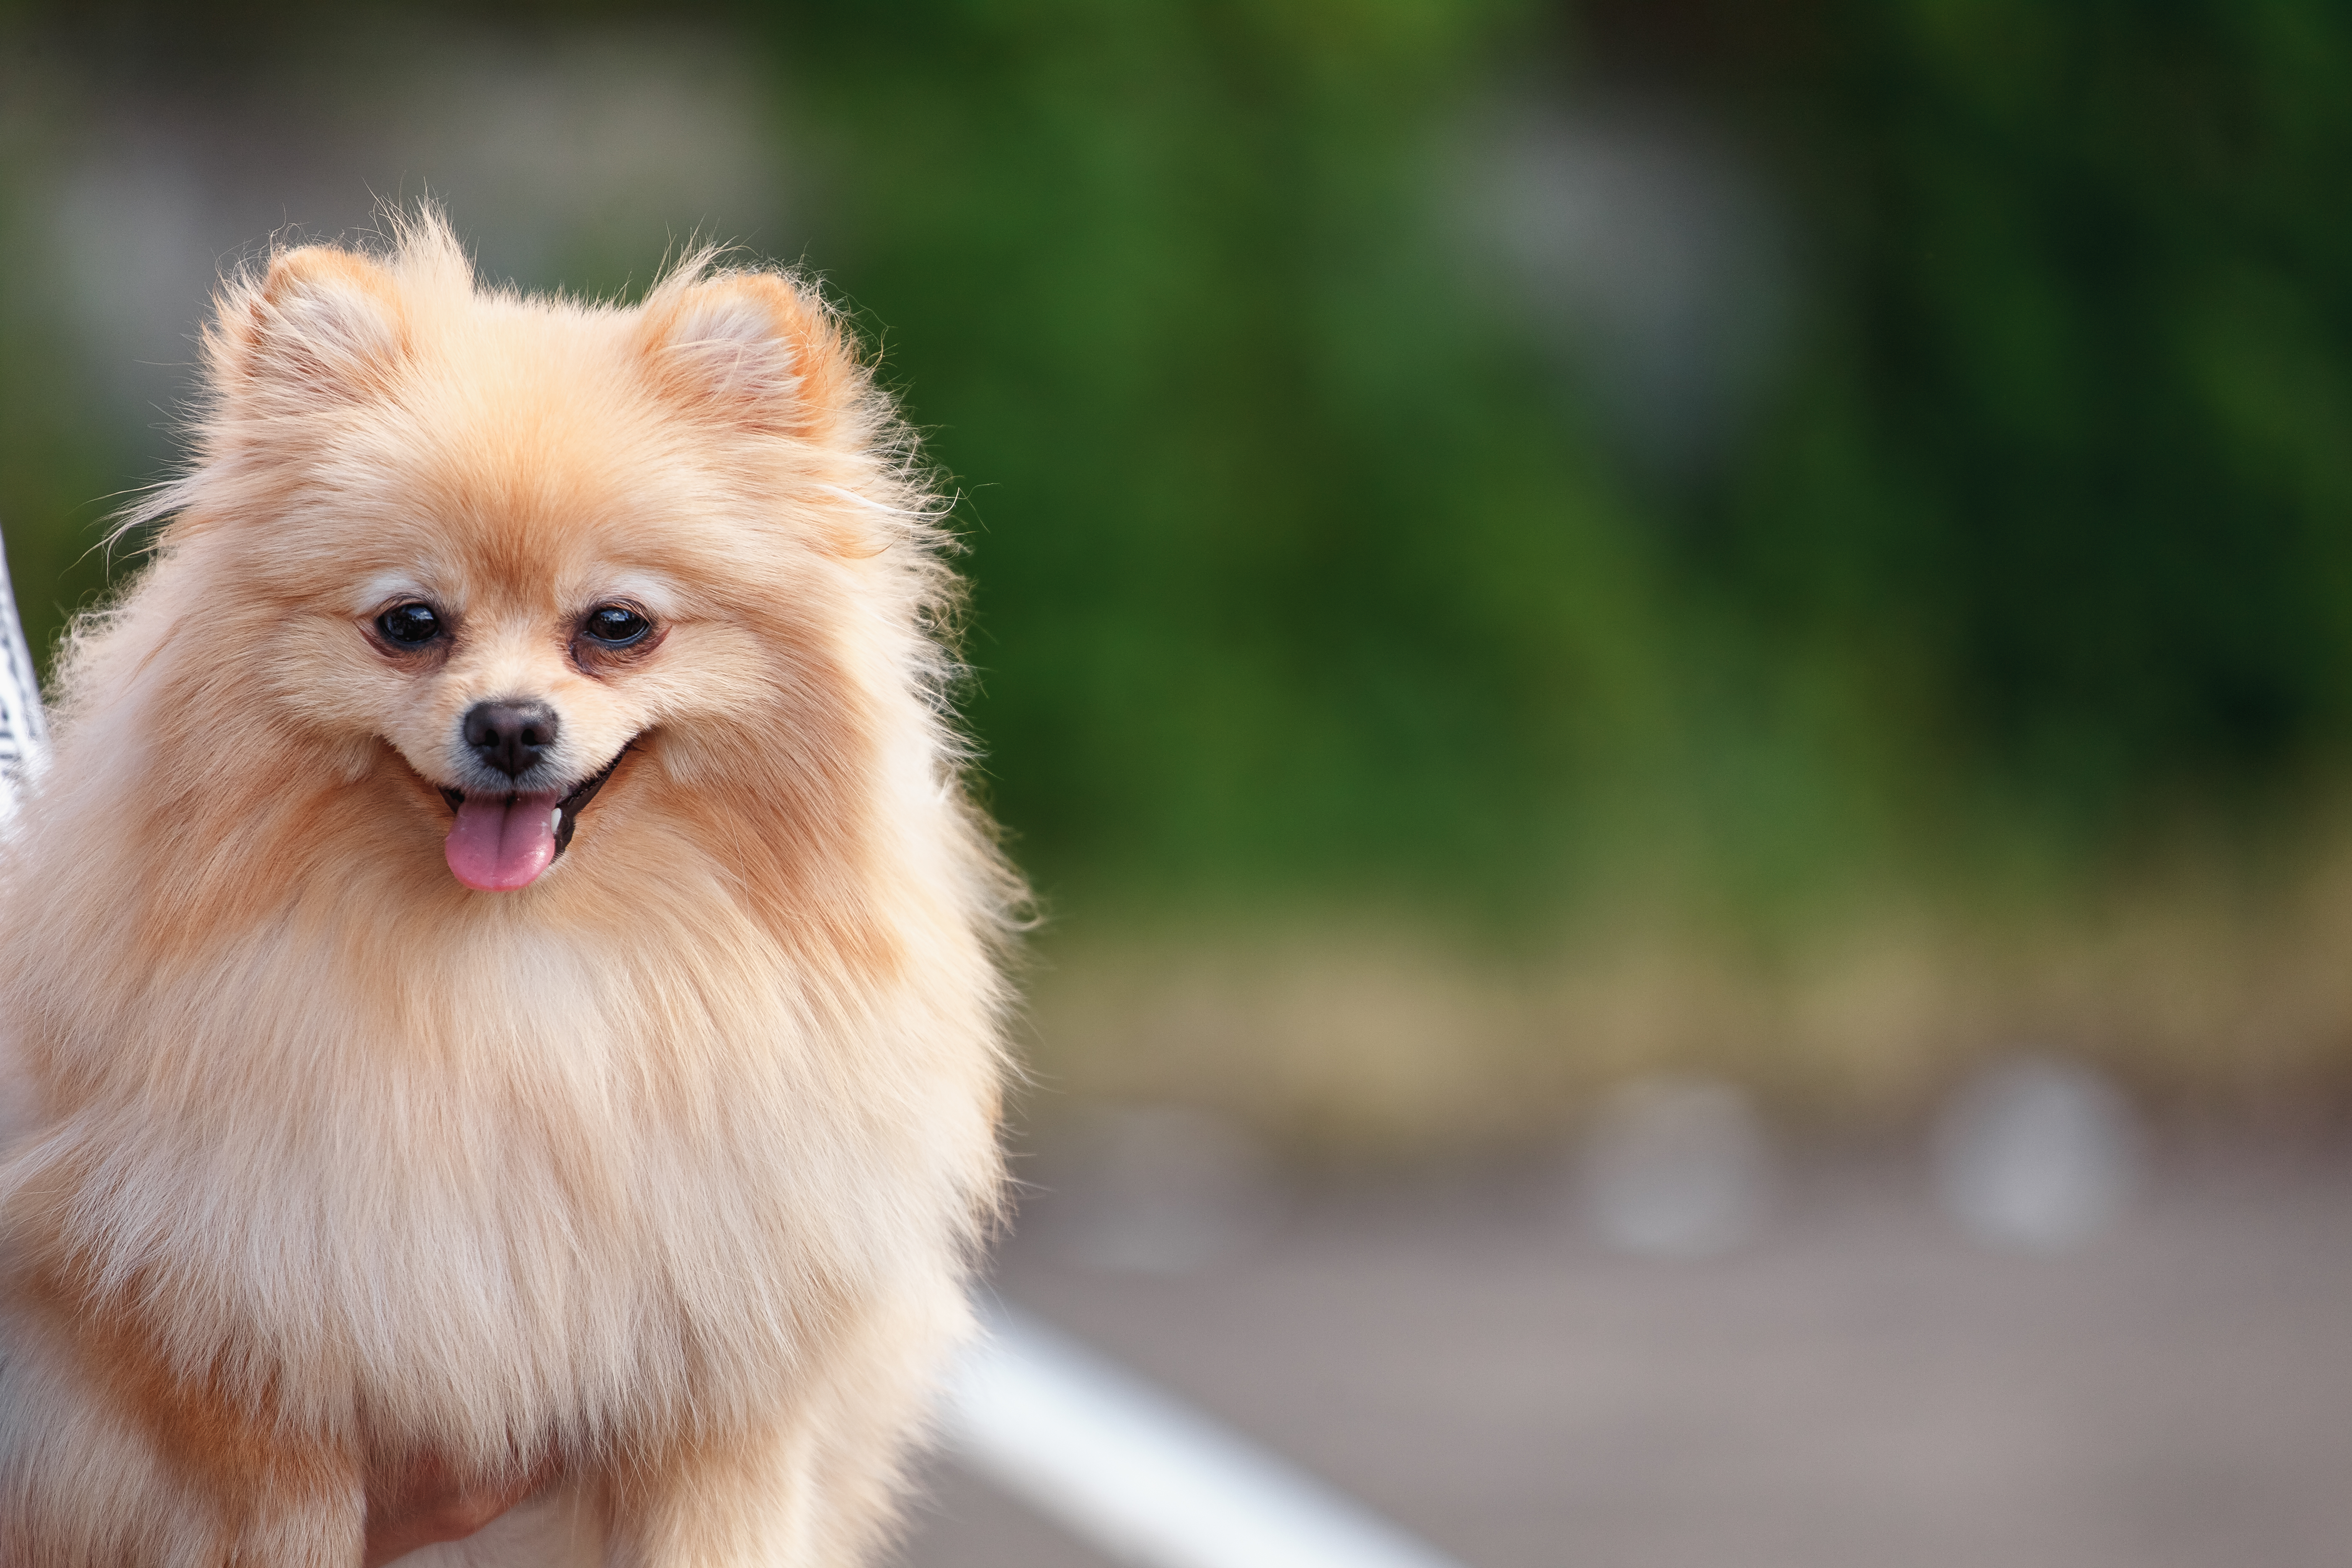 How to Make a Pomeranian's Hair Grow Better | Cuteness